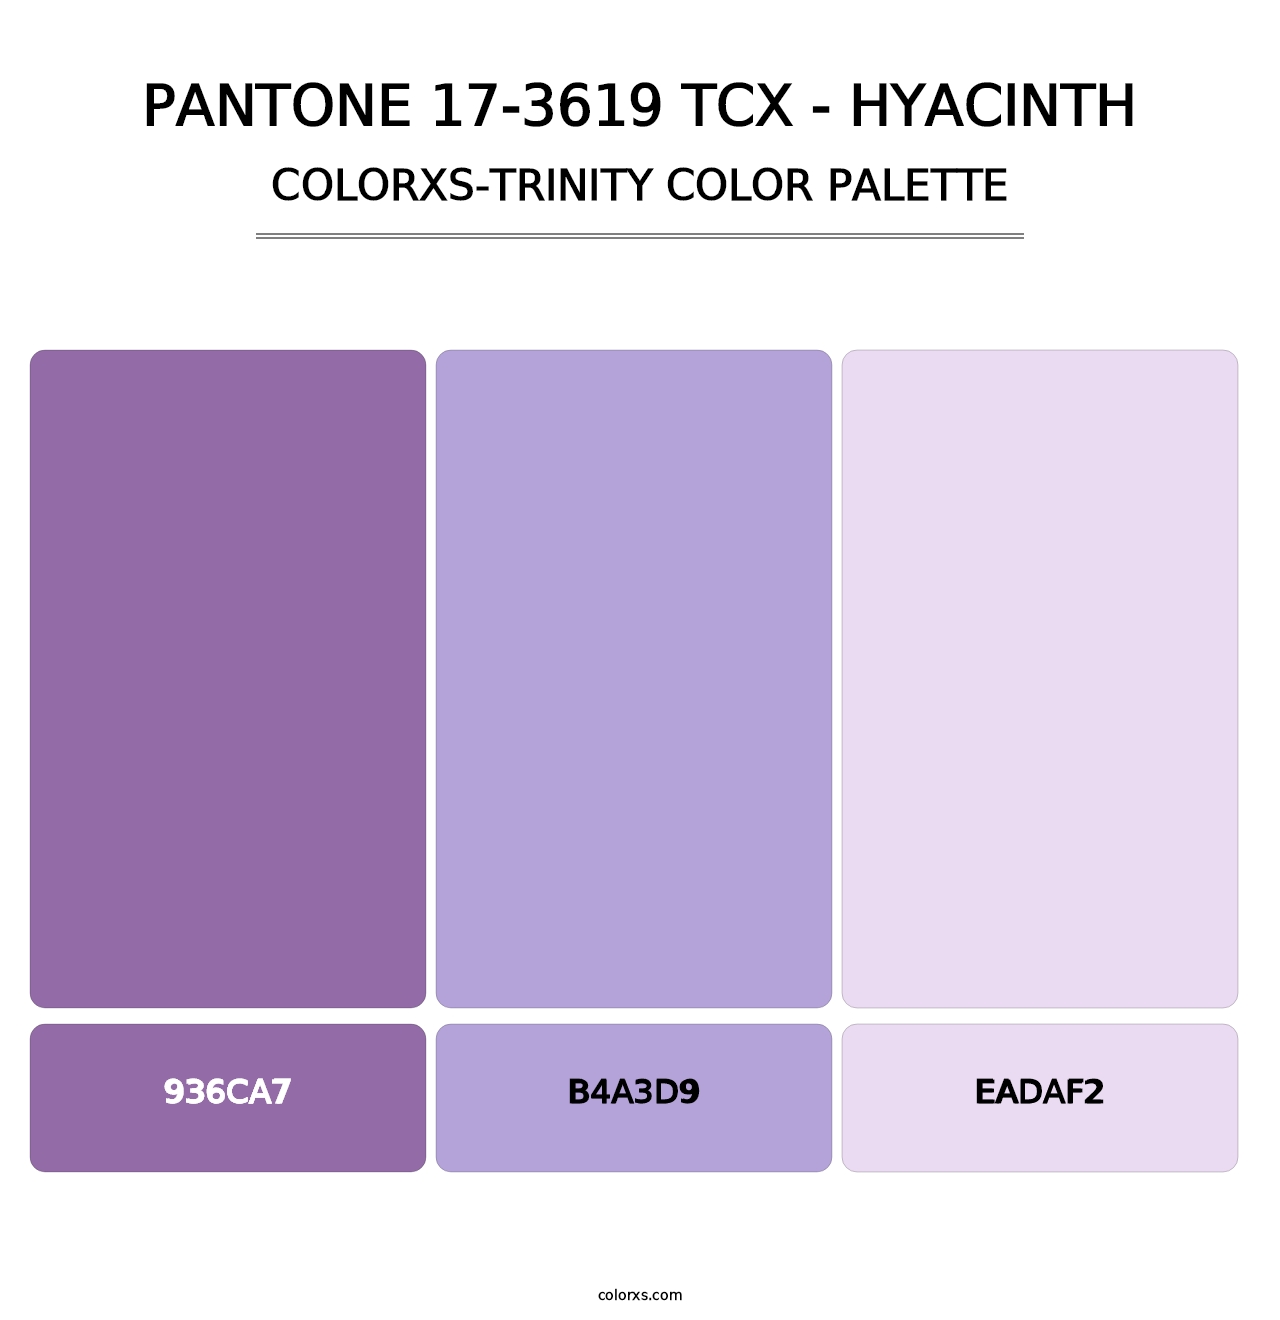 PANTONE 17-3619 TCX - Hyacinth - Colorxs Trinity Palette